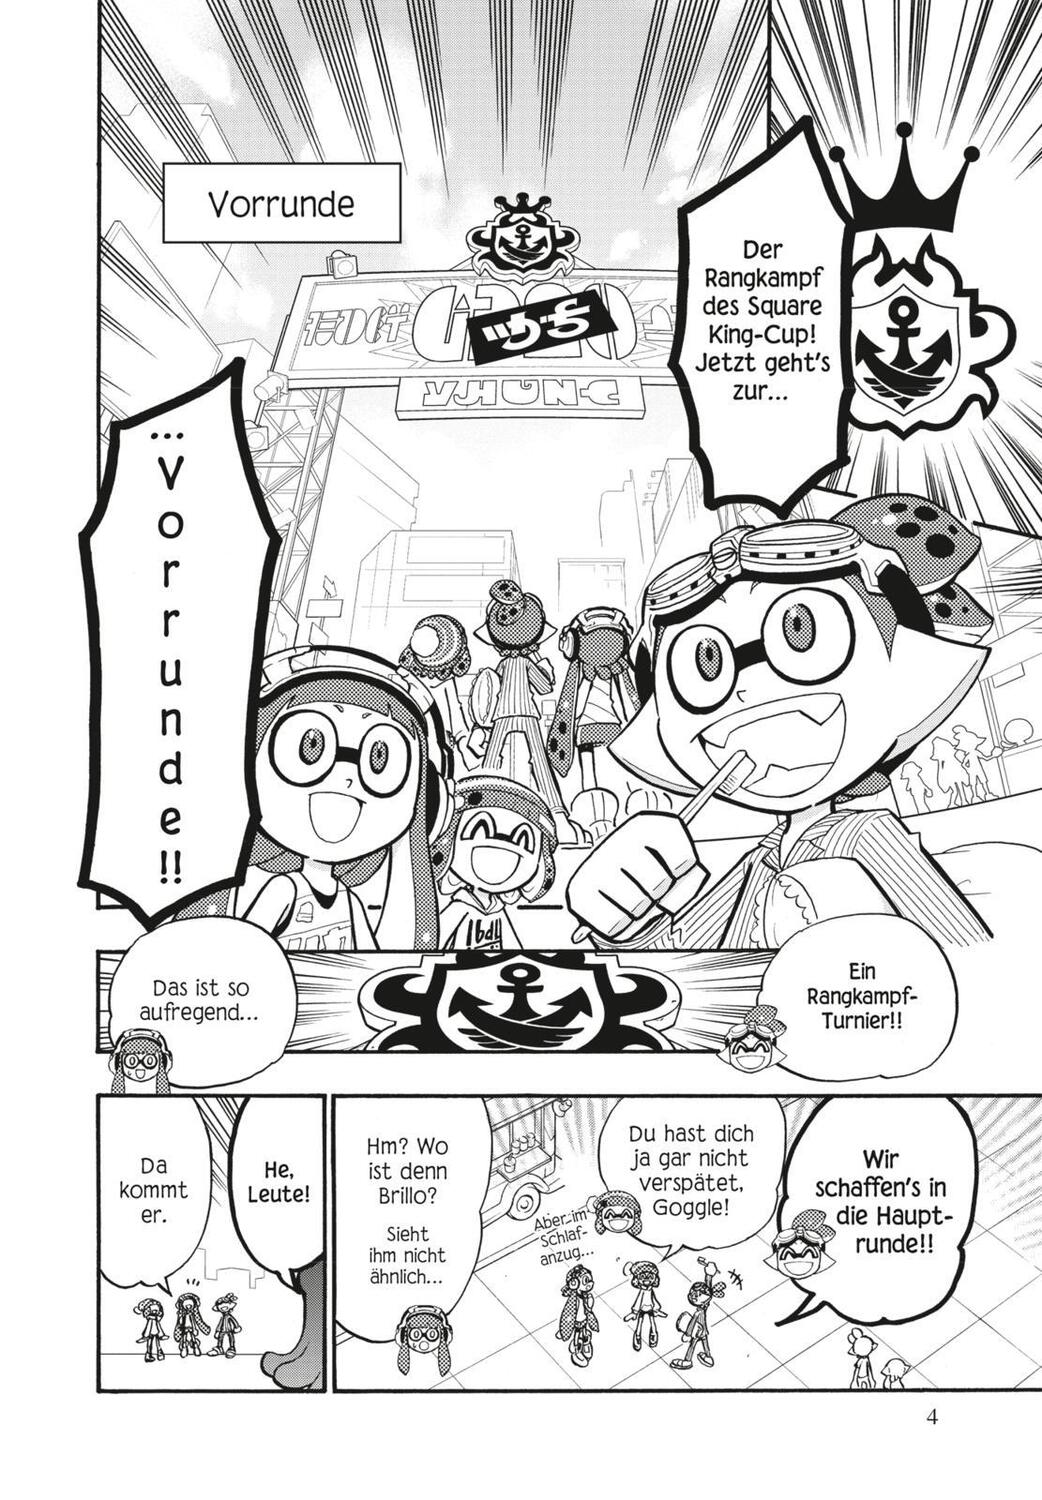 Bild: 9783551730282 | Splatoon 9 | Das Nintendo-Game als Manga! Ideal für Kinder und Gamer!